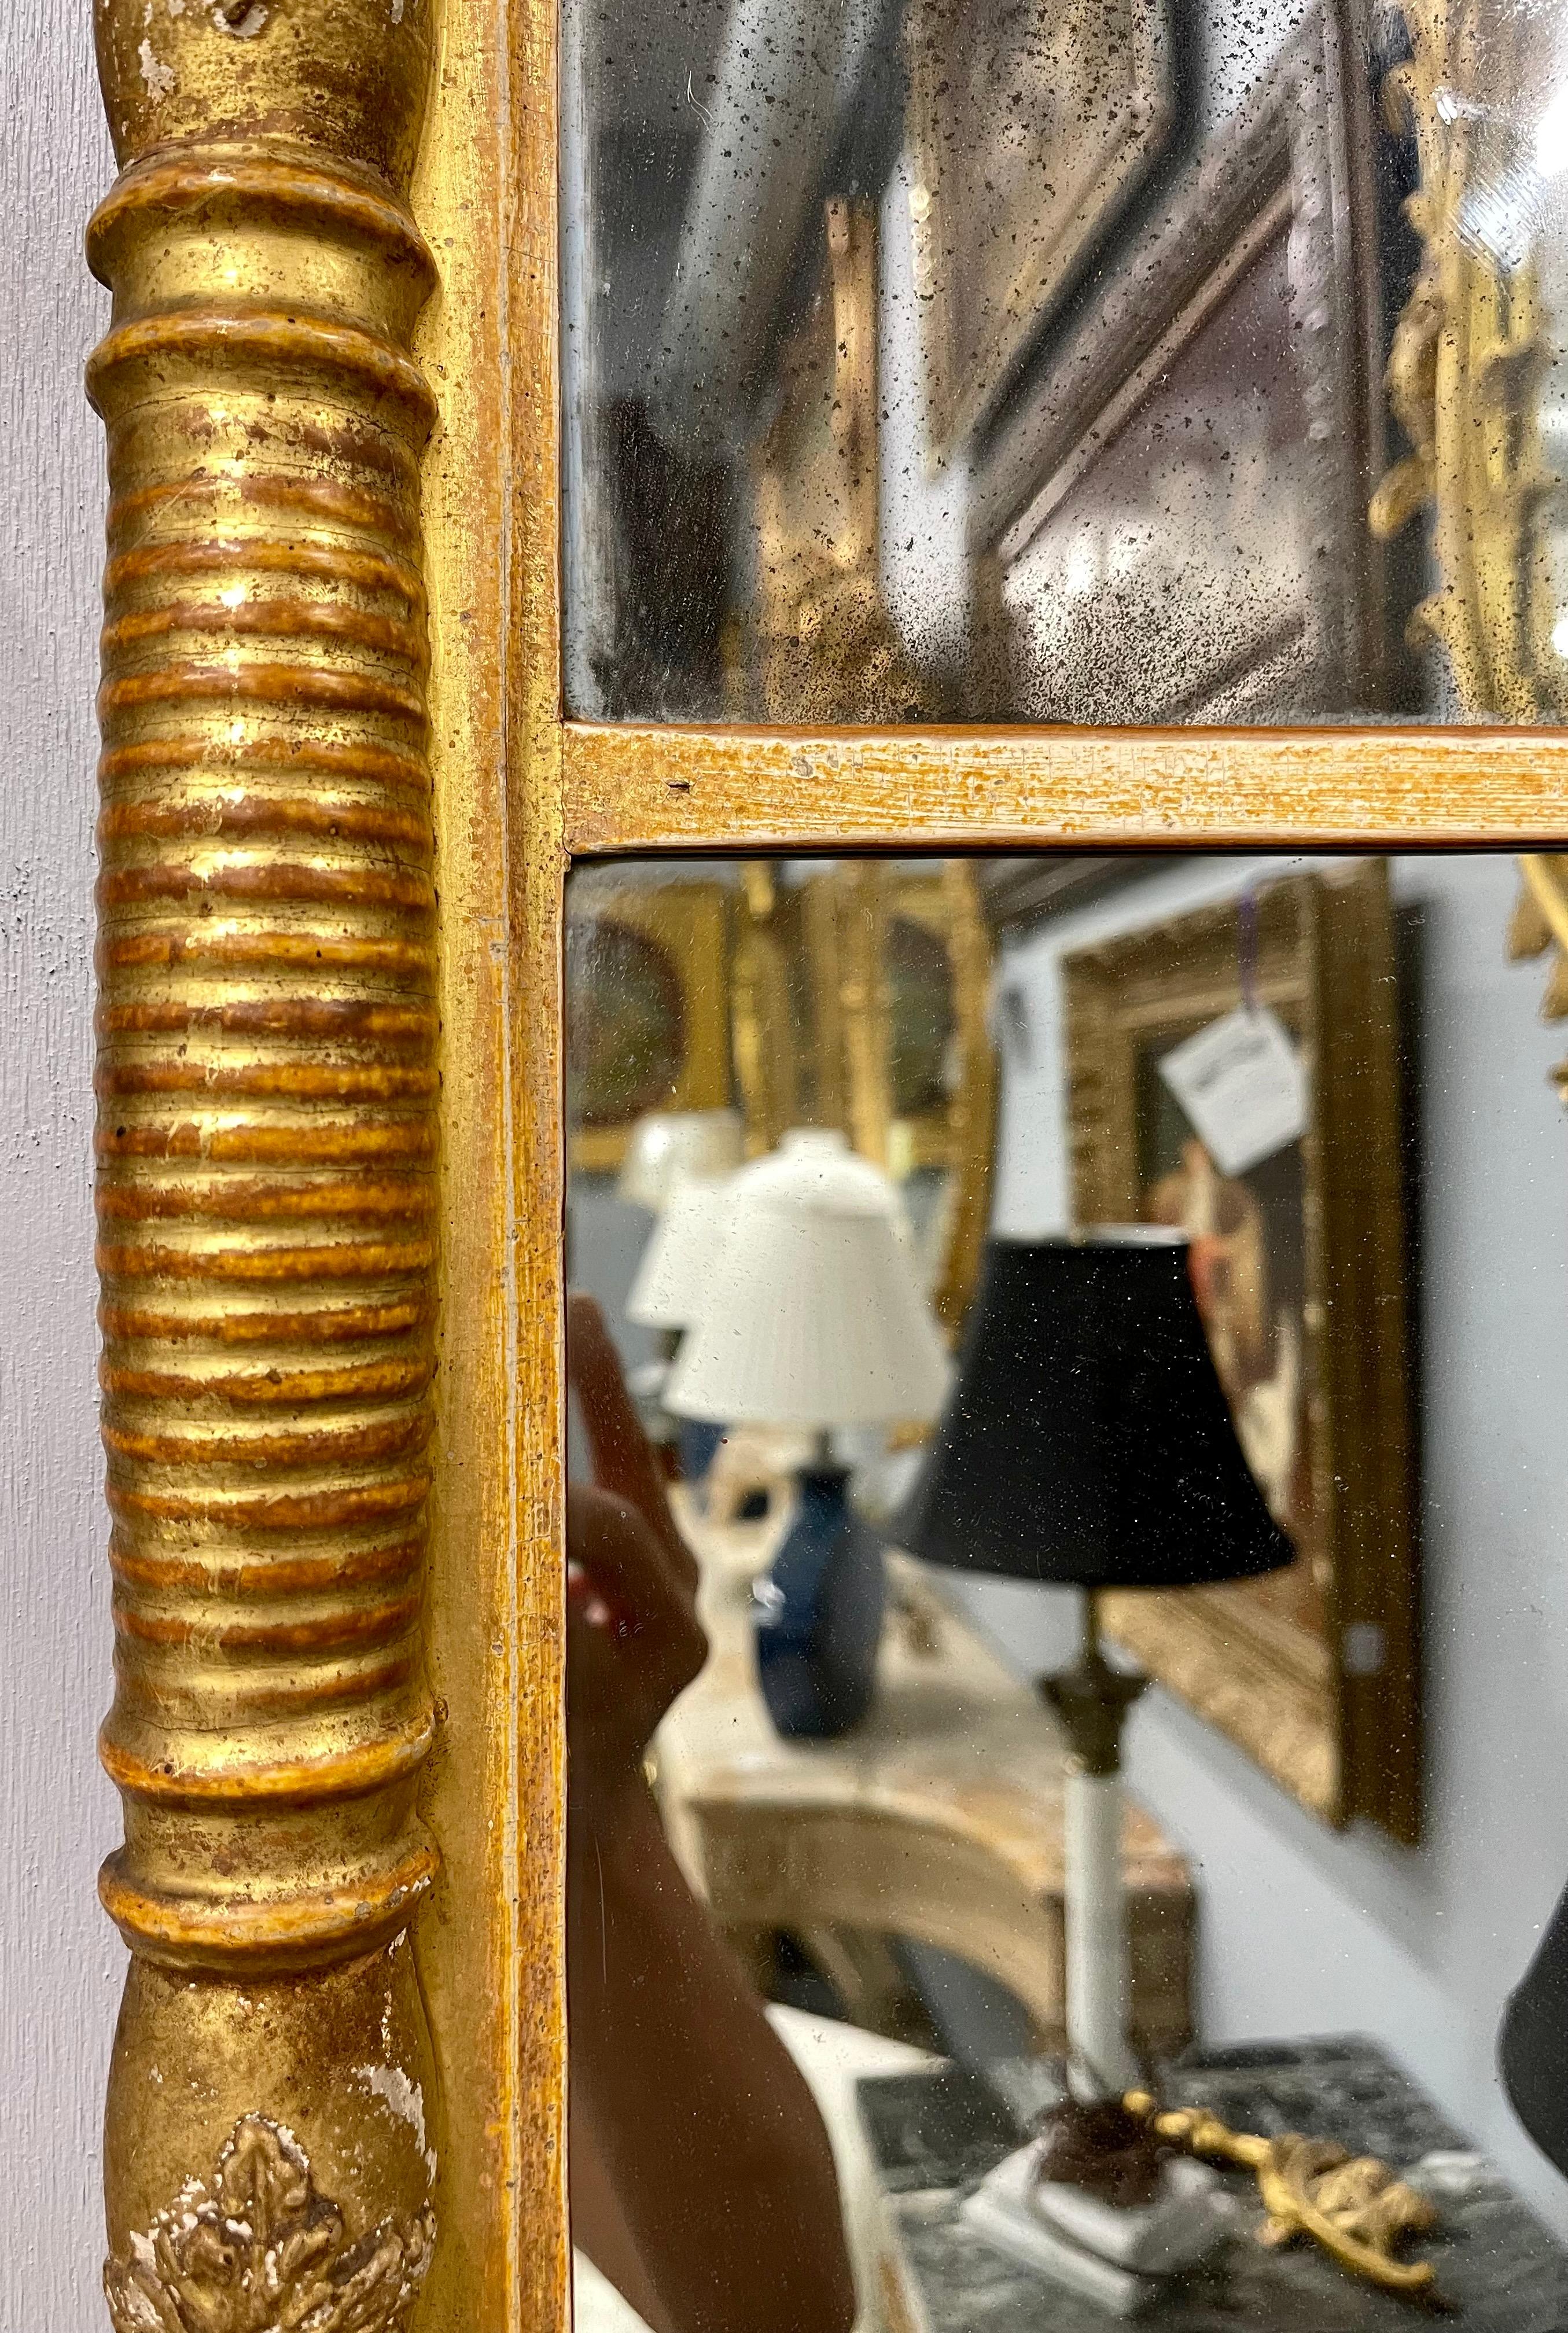 miroir mural ou de table de style Empire du XIXe siècle. Le miroir en deux parties a un cadre doré de conception Empire avec des supports entièrement sculptés se terminant par un plateau moulé avec un motif de boule circulaire inférieur rappelant la